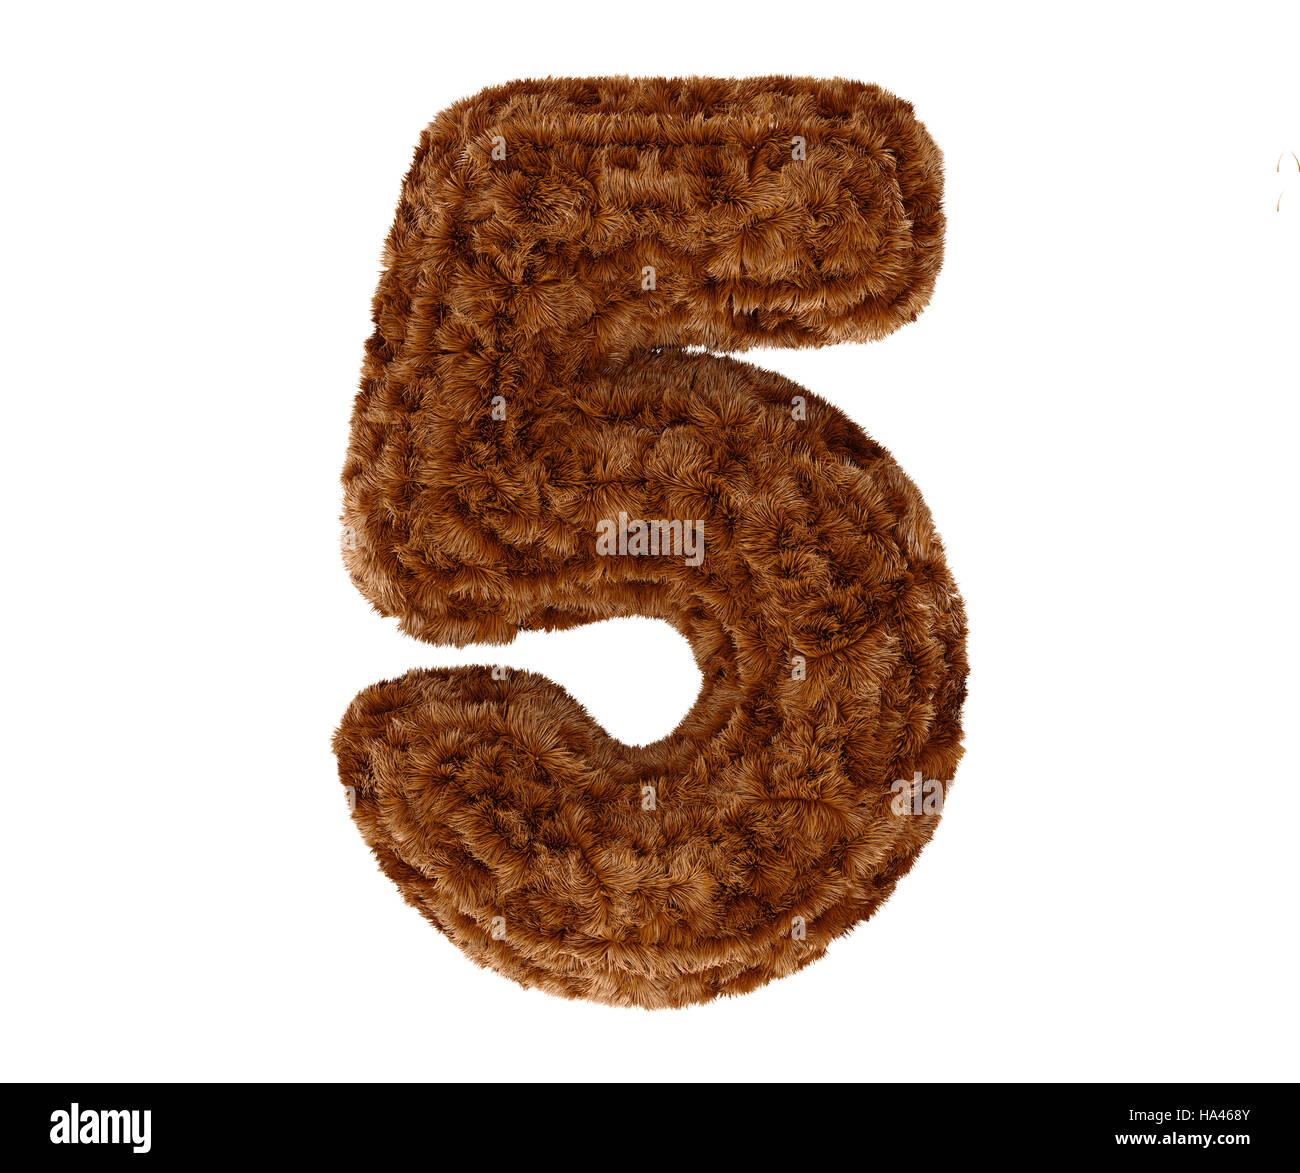 Animale selvatico bruno Orso folta pelliccia decorativa alfabeto golden cifra cinque simbolo - 5. Il rendering 3d'illustrazione. Isolato su sfondo bianco Foto Stock